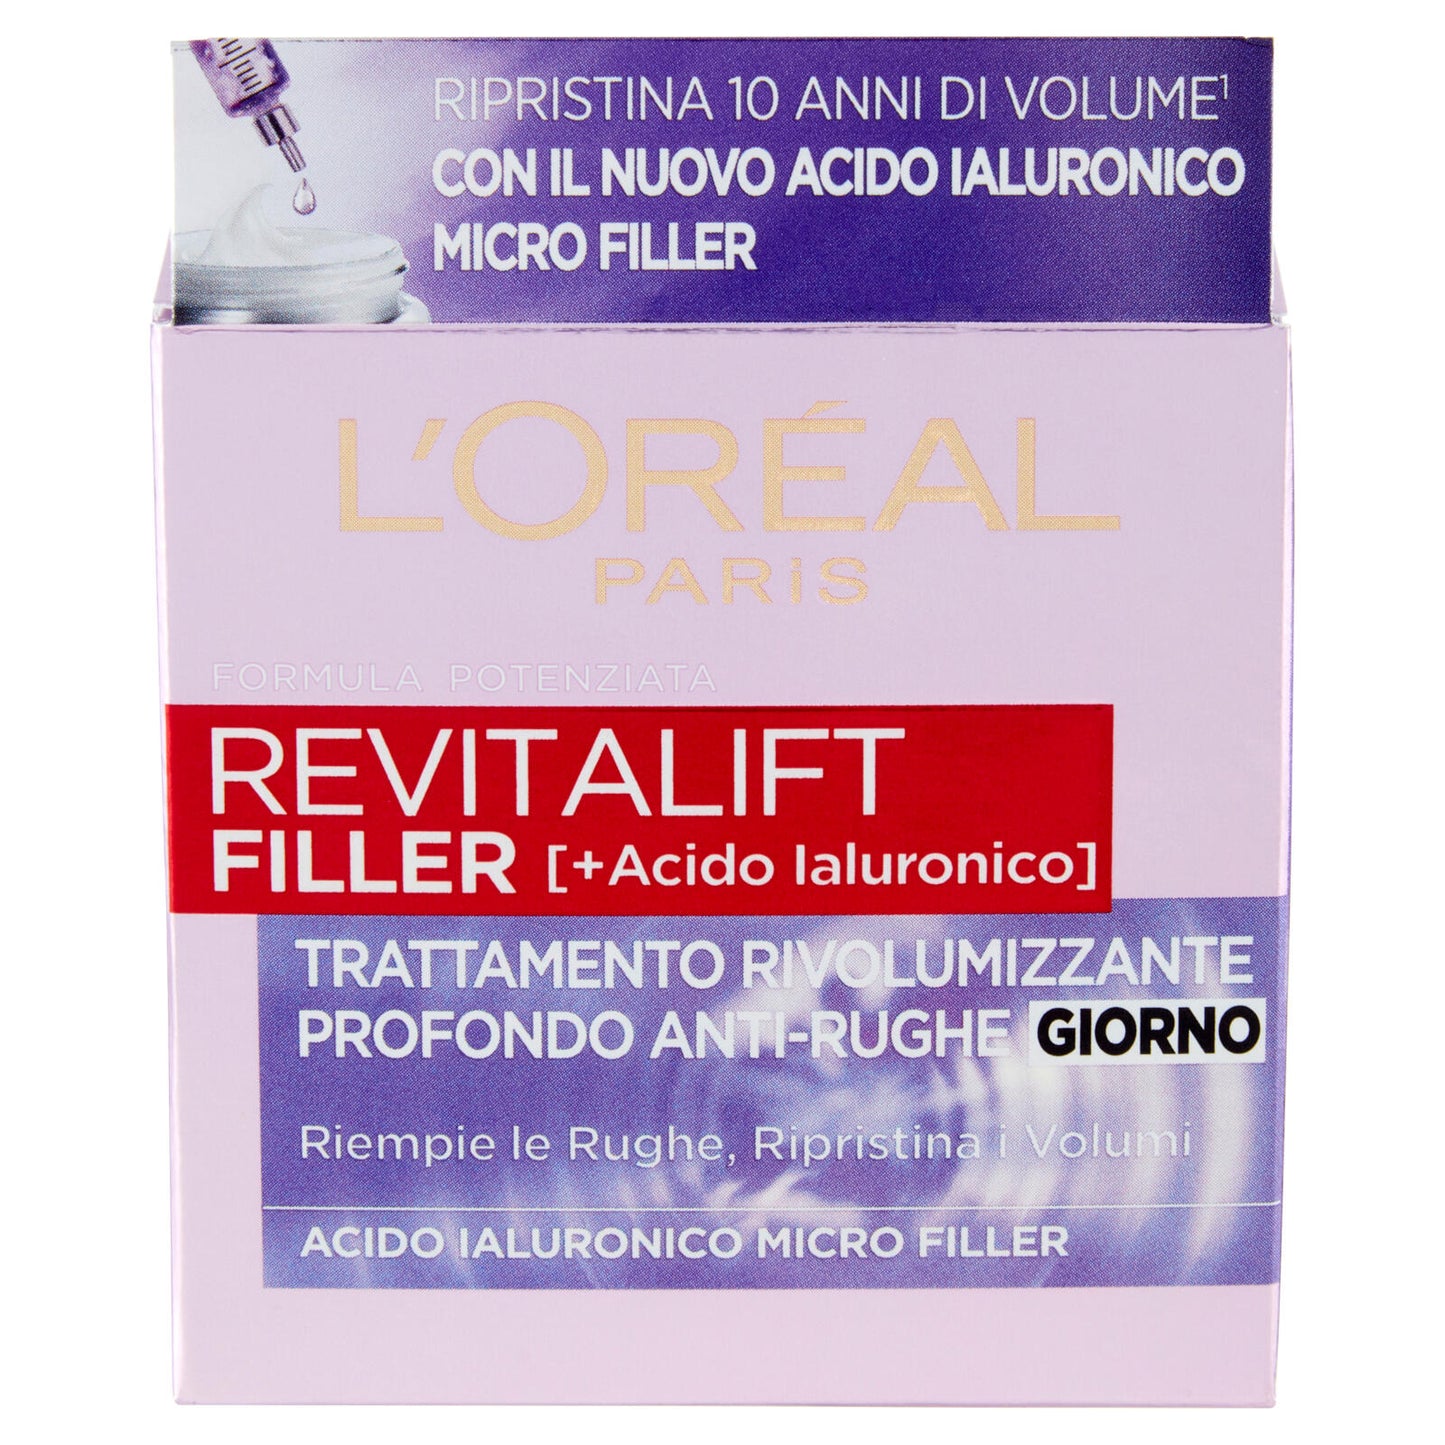 L'Oréal Paris Revitalift Filler, Azione Antirughe Rivolumizzante con Acido Ialuronico, 50 ml